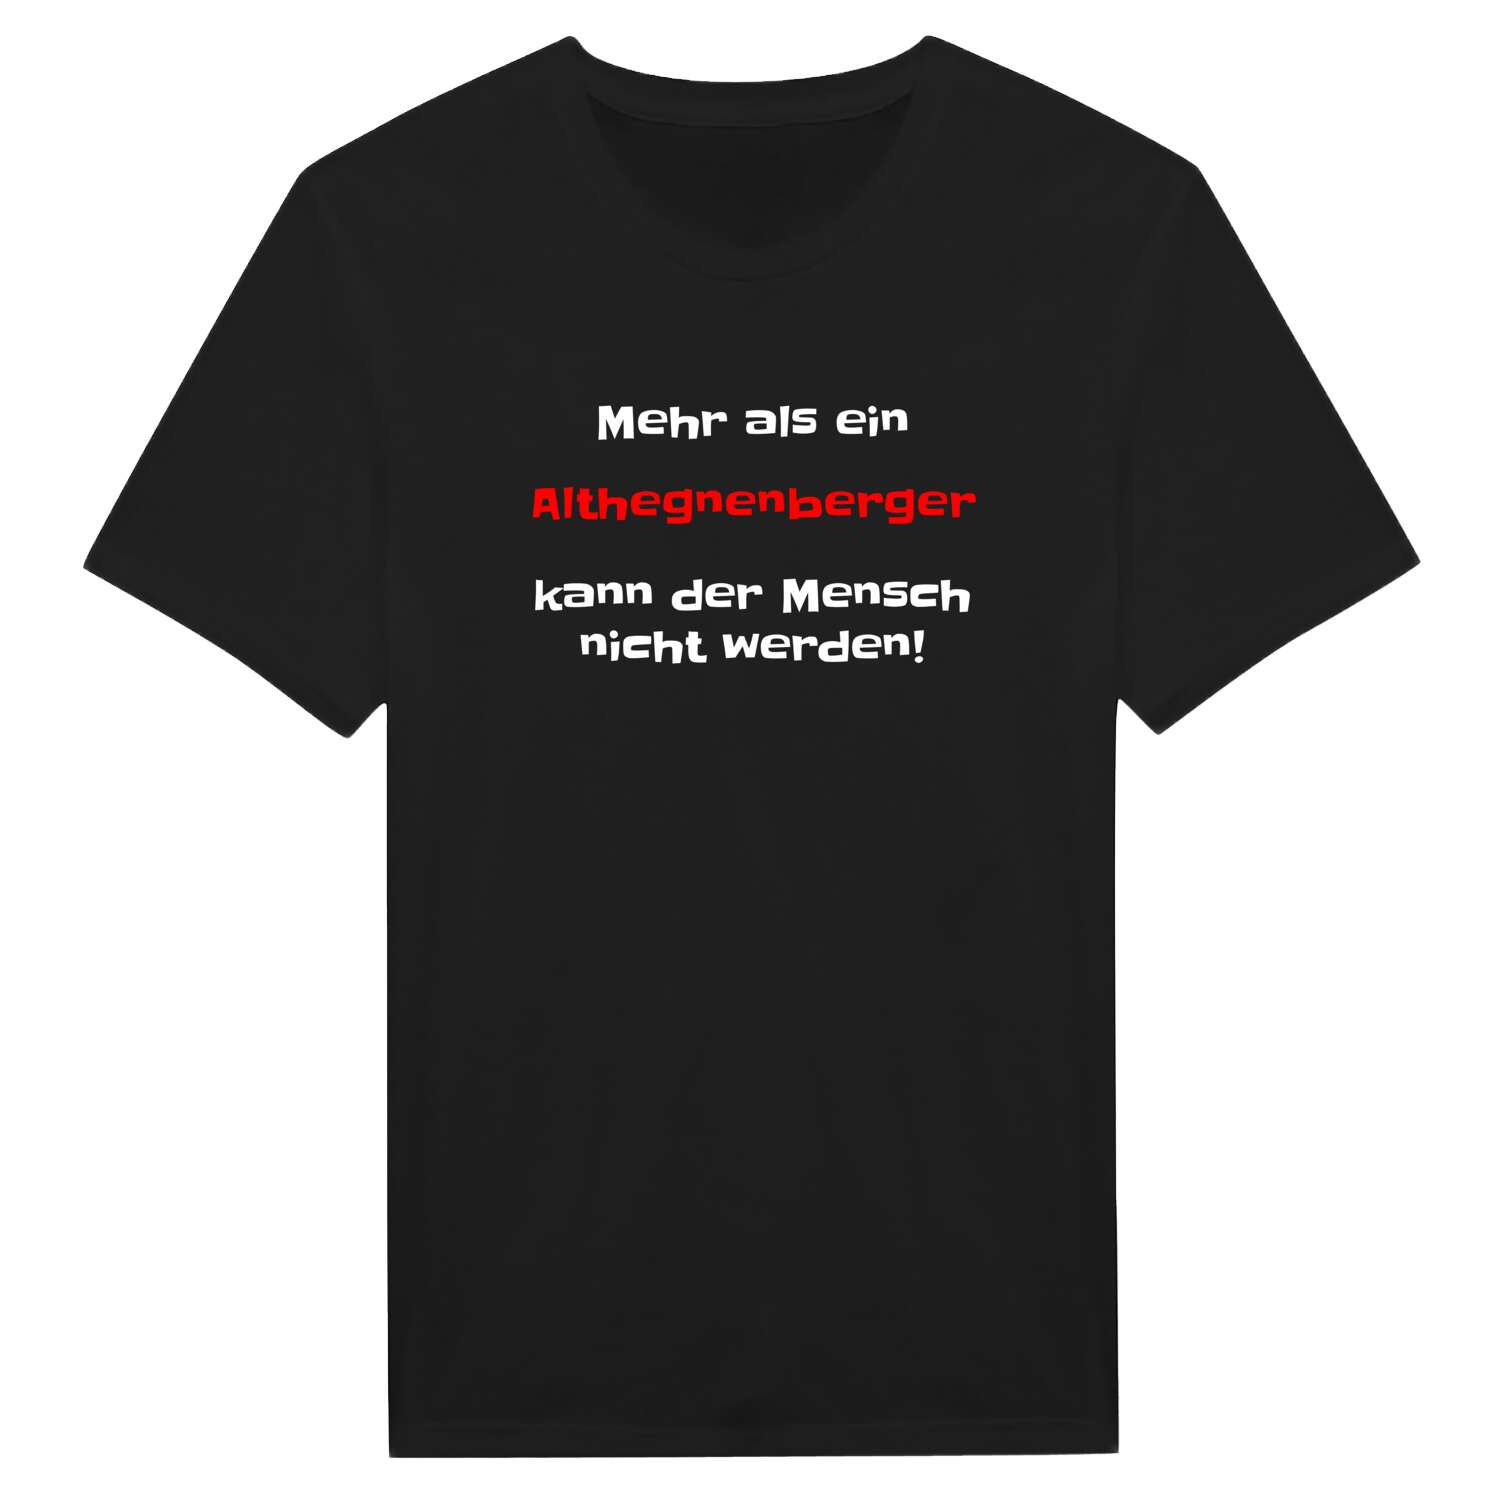 Althegnenberg T-Shirt »Mehr als ein«